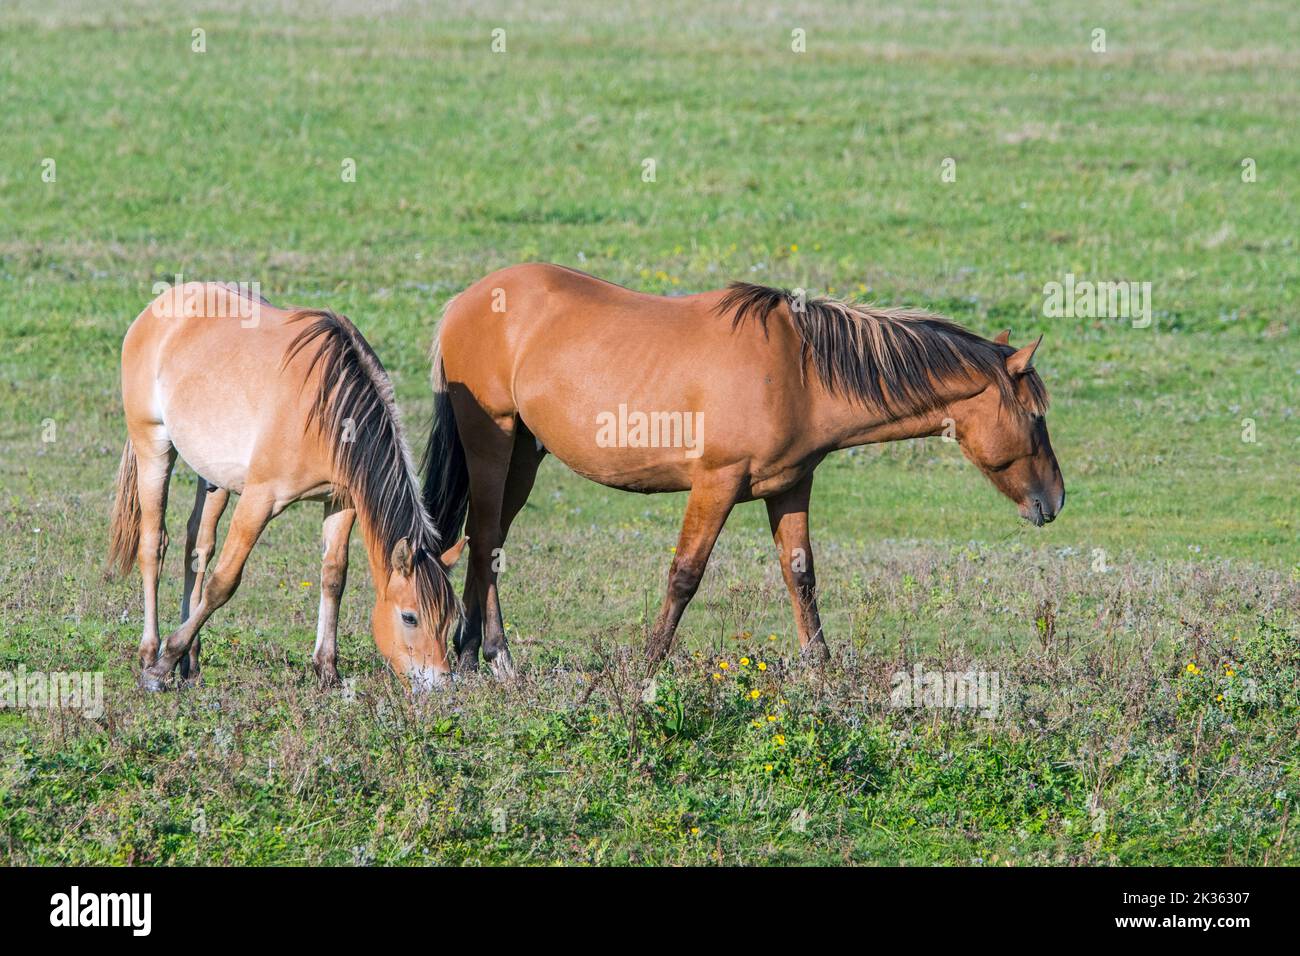 Henson Horses / Cheval de Henson, raza de caballo moderna del noreste de Francia en el parque Marquenterre, Bahía del Somme, Altos de Francia Foto de stock